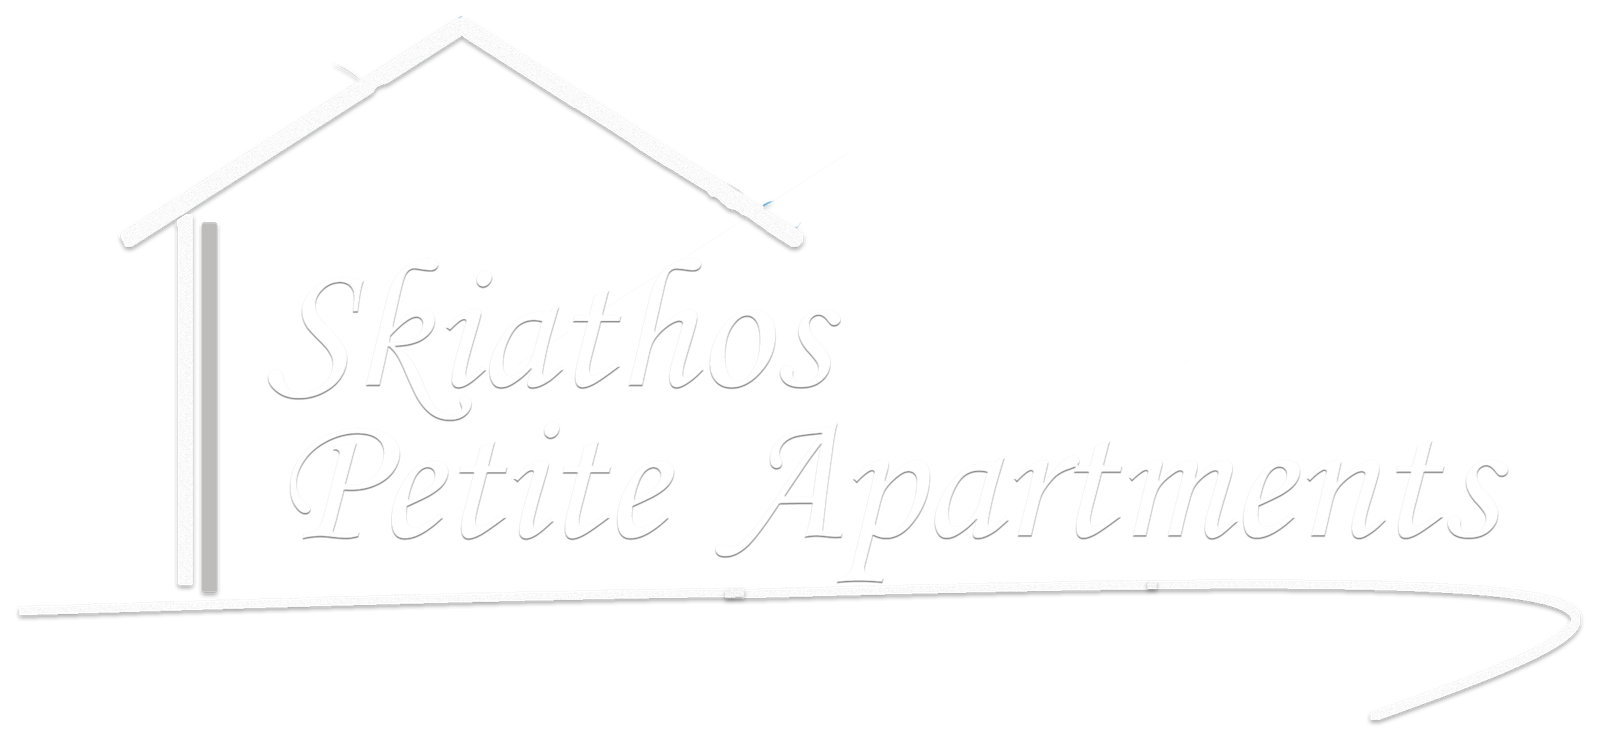 Skiathos Petite Apartments | Skiathos Petite Apartments